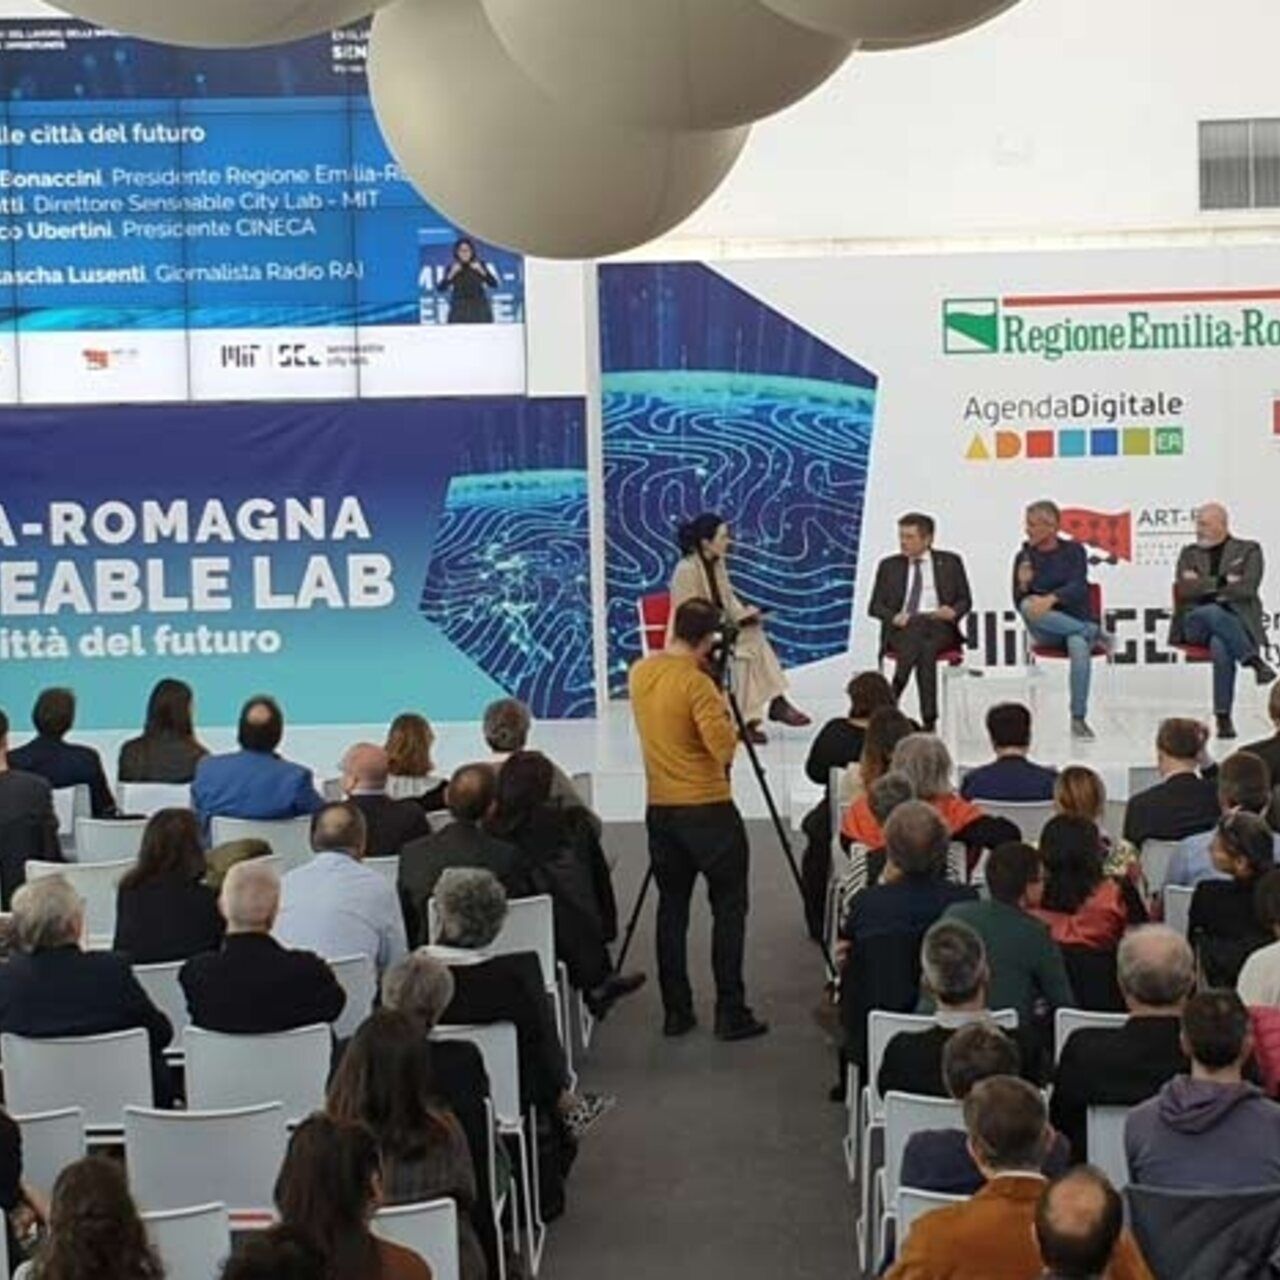 Масачузетският технологичен институт: MIT Senseable City Lab ще пристигне в Bologna Tecnopolo, за да си представи градовете на бъдещето благодарение на сътрудничеството с региона Емилия-Романя